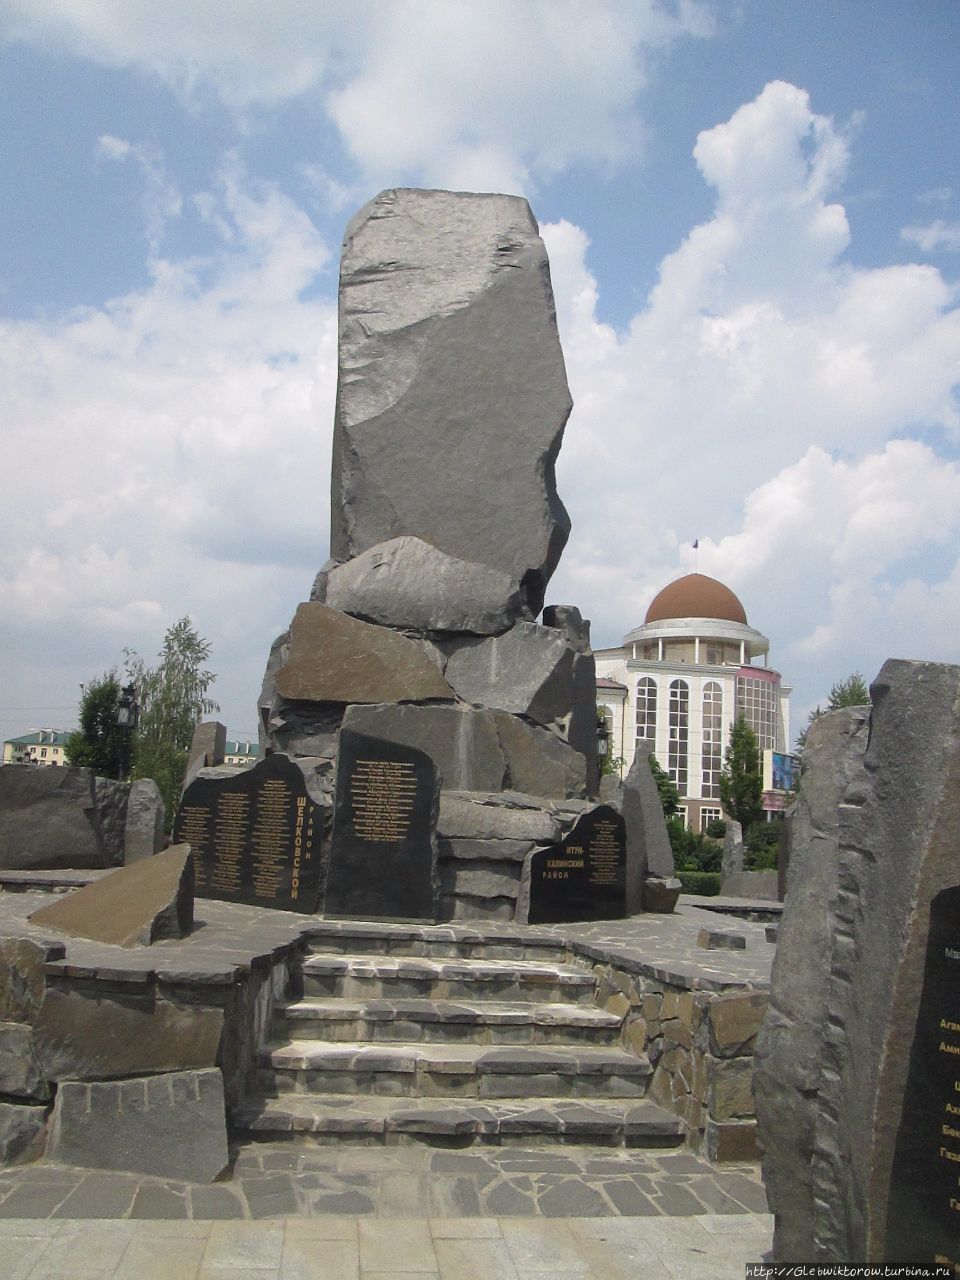 Мемориал погибшим во конфликтах XX века